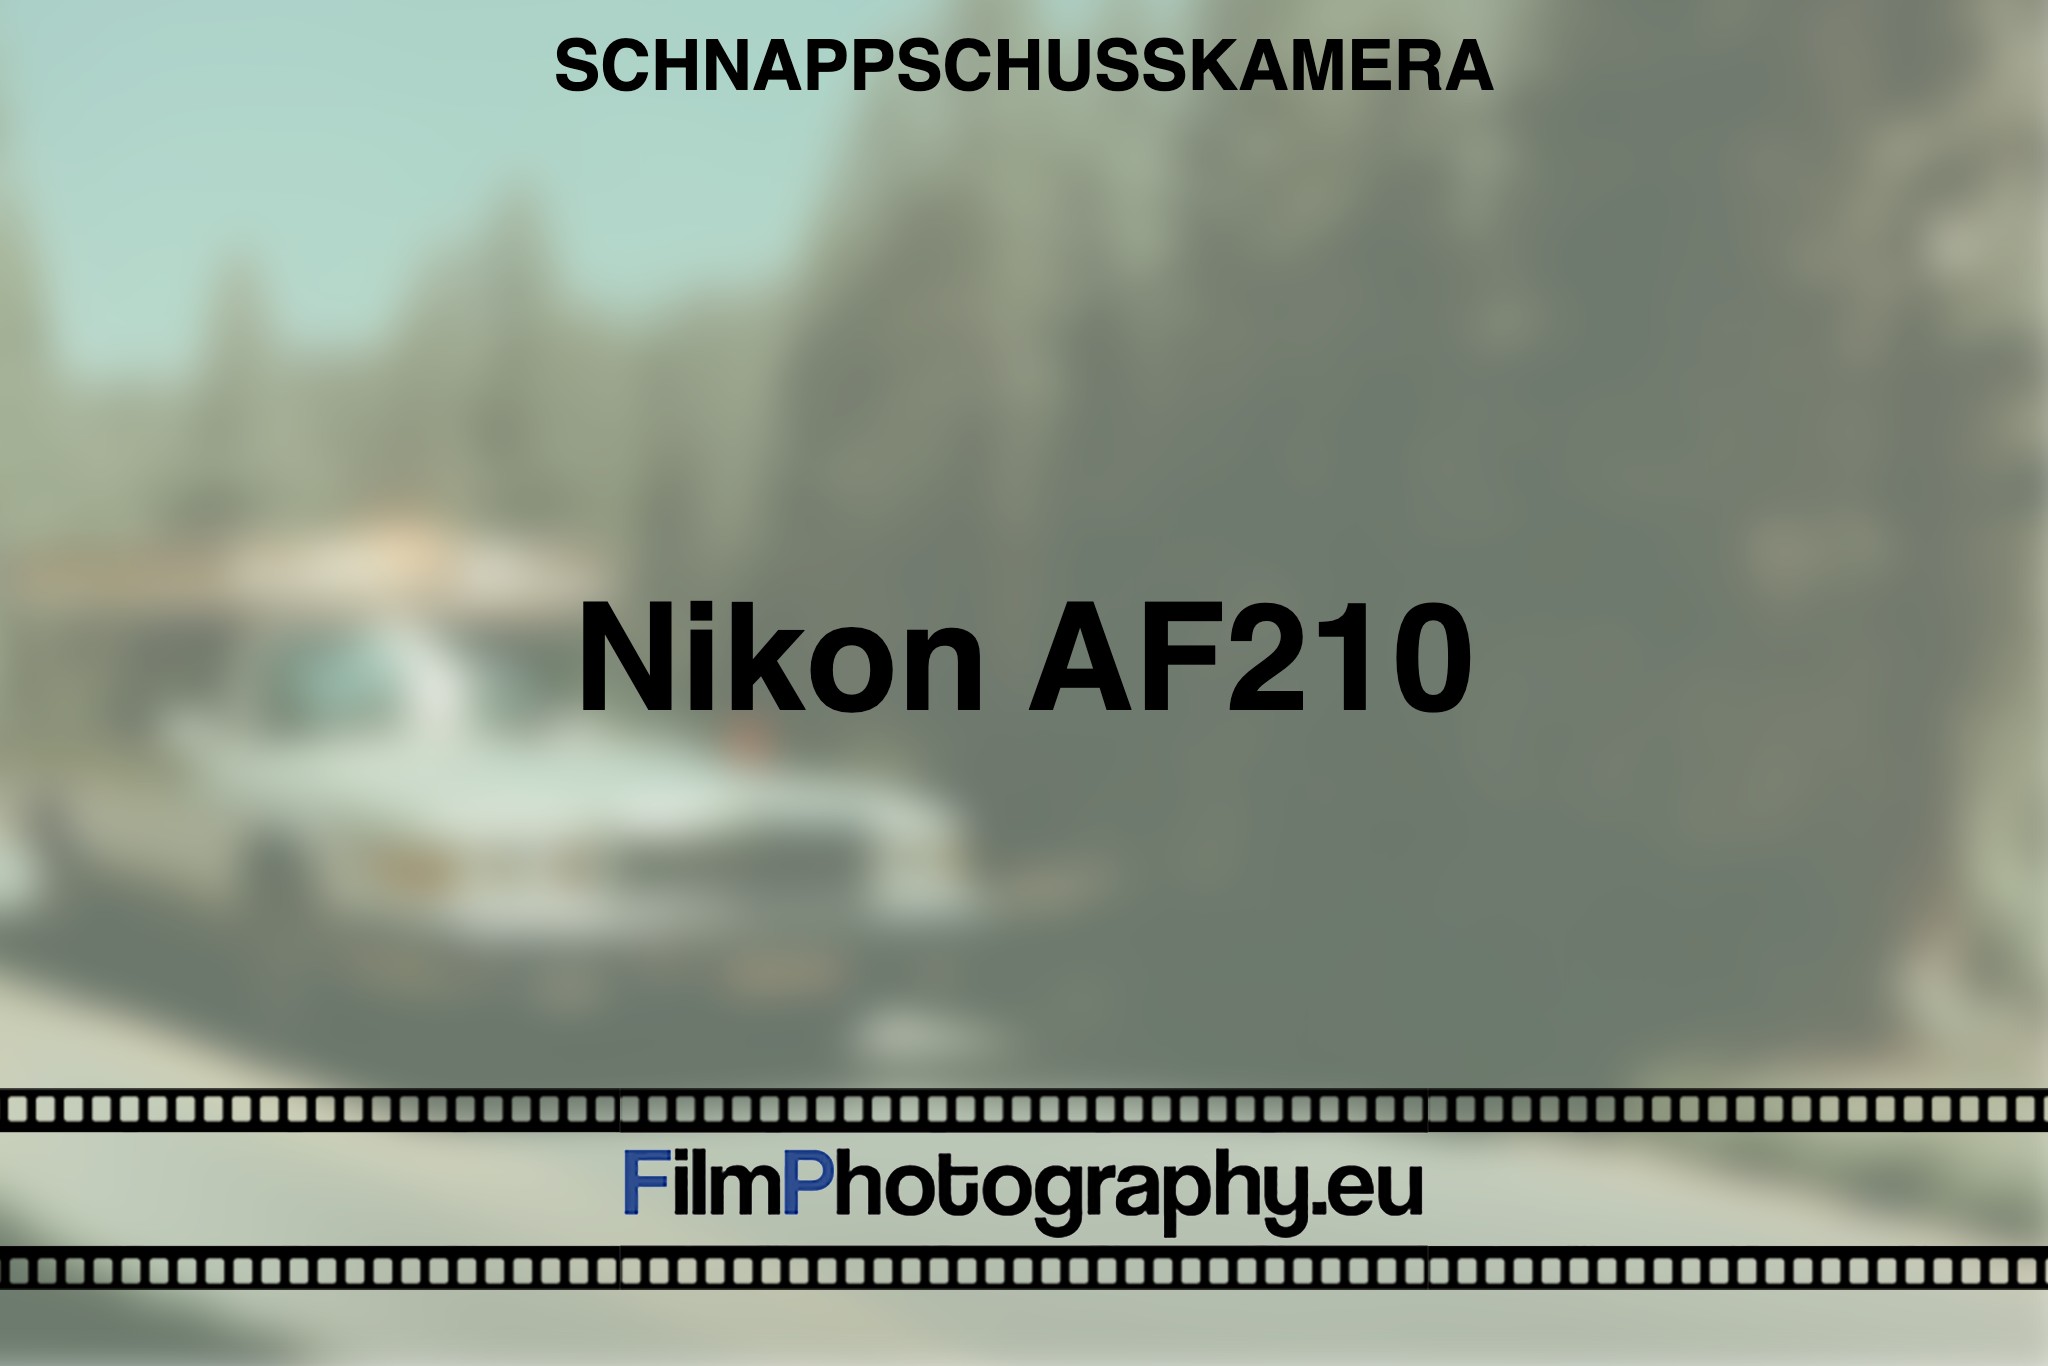 nikon-af210-schnappschusskamera-bnv